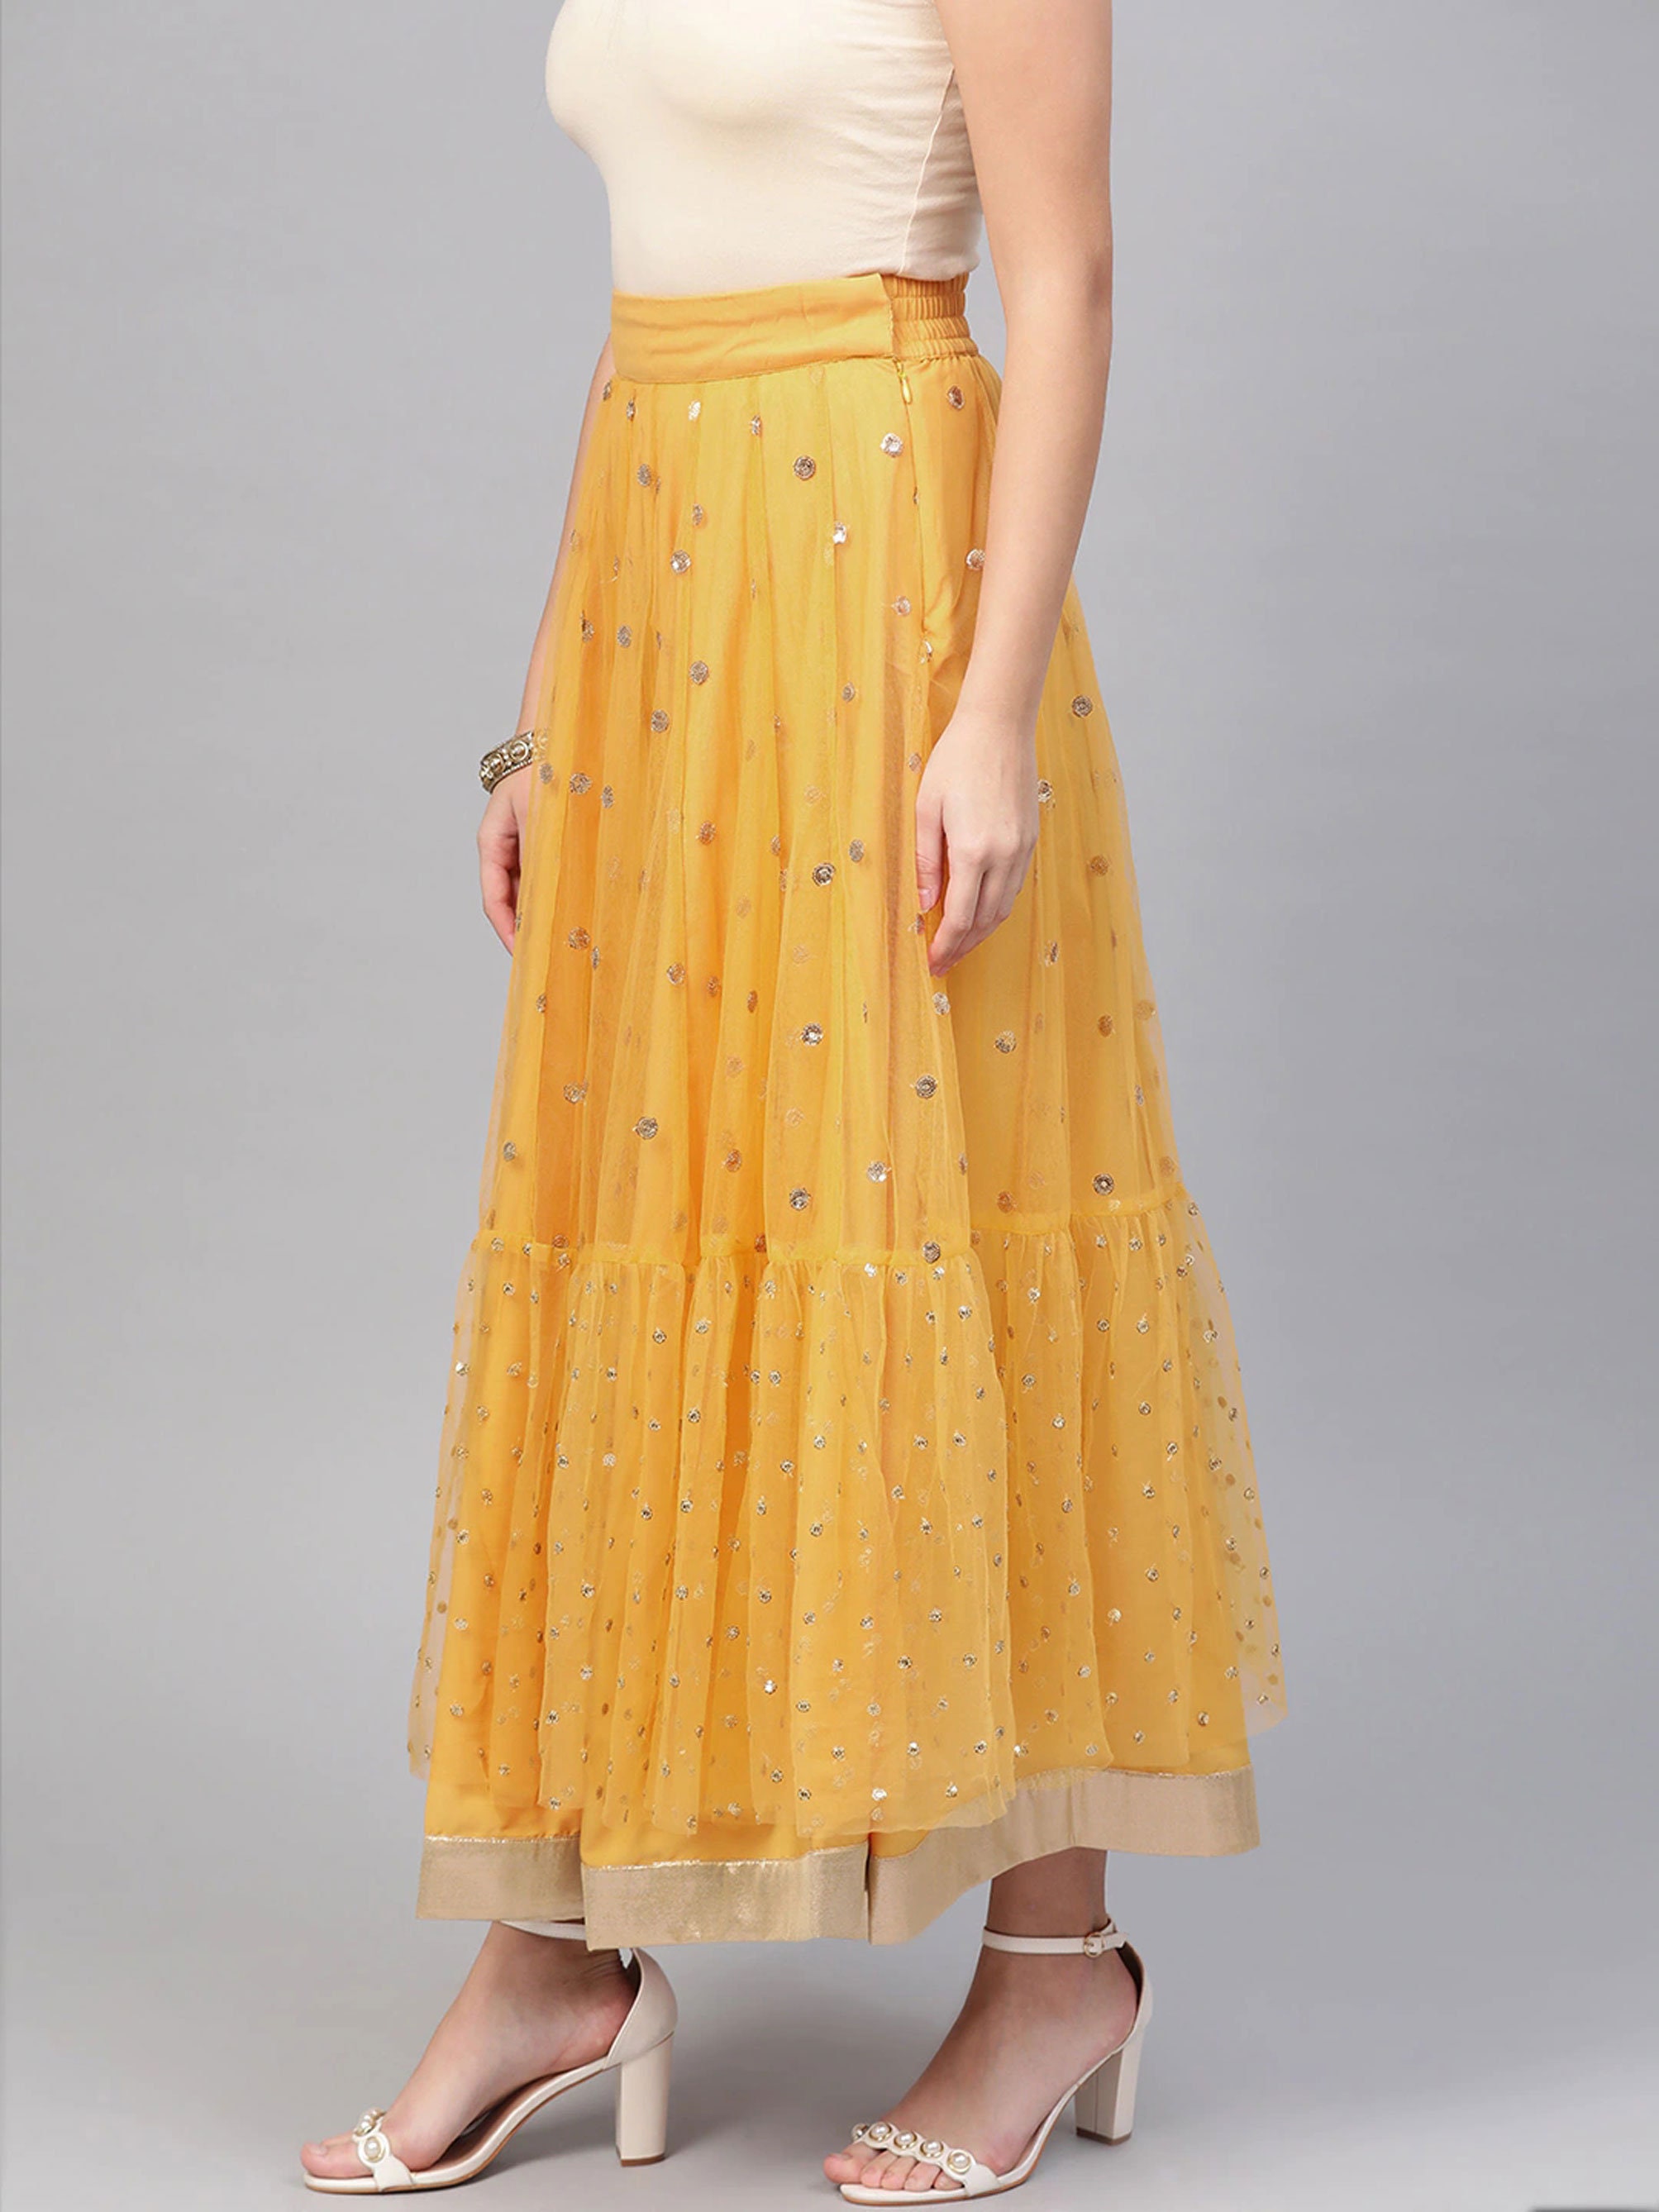 Yellow & Golden Embellished Net Skirt Bohemian Skirt Beach | Etsy